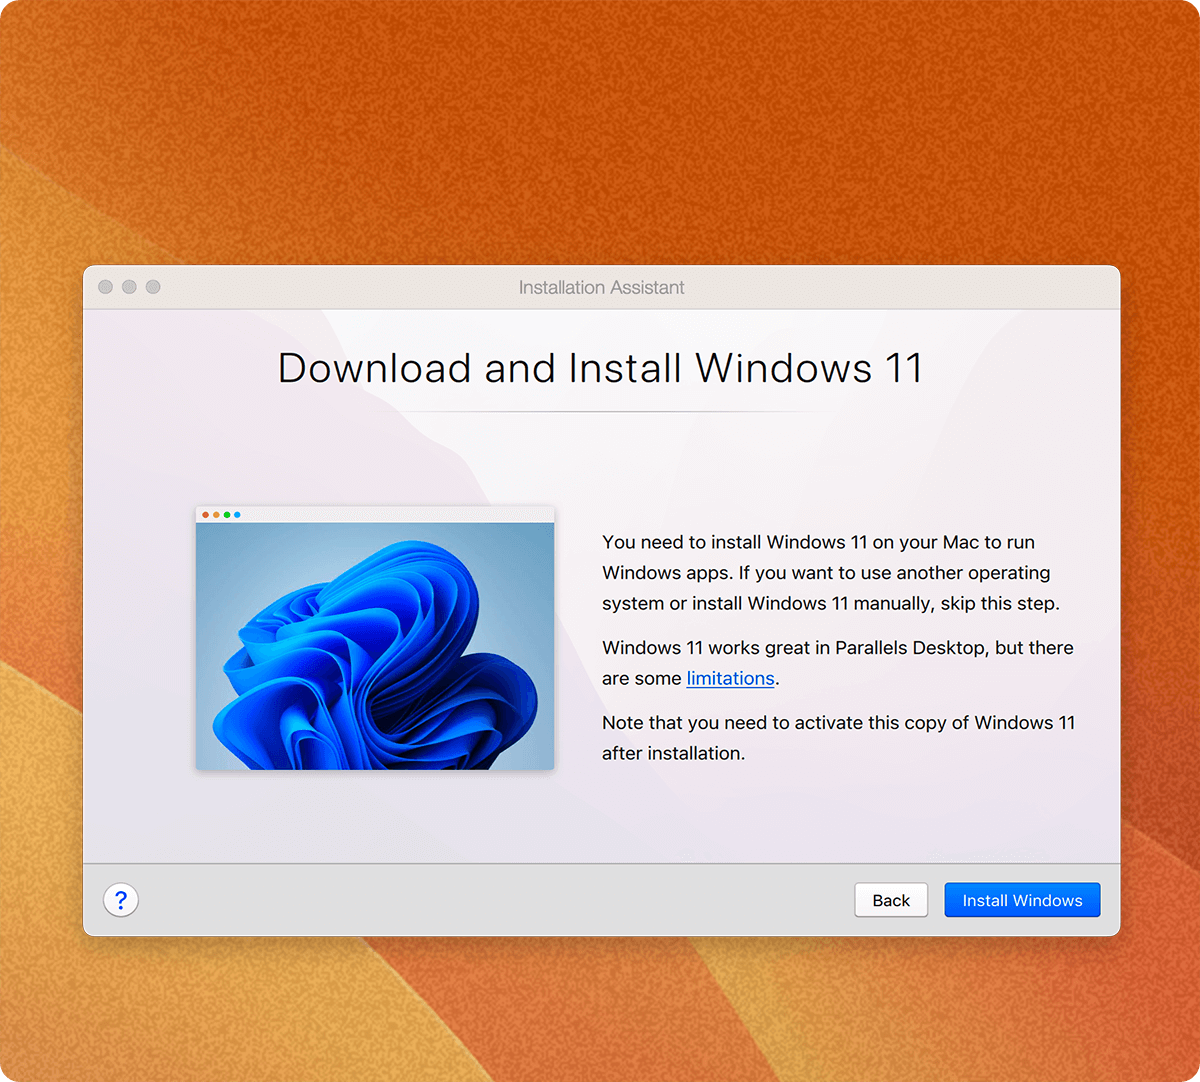 Descargue, instale y configure Windows 11 en su Mac con dos clics.